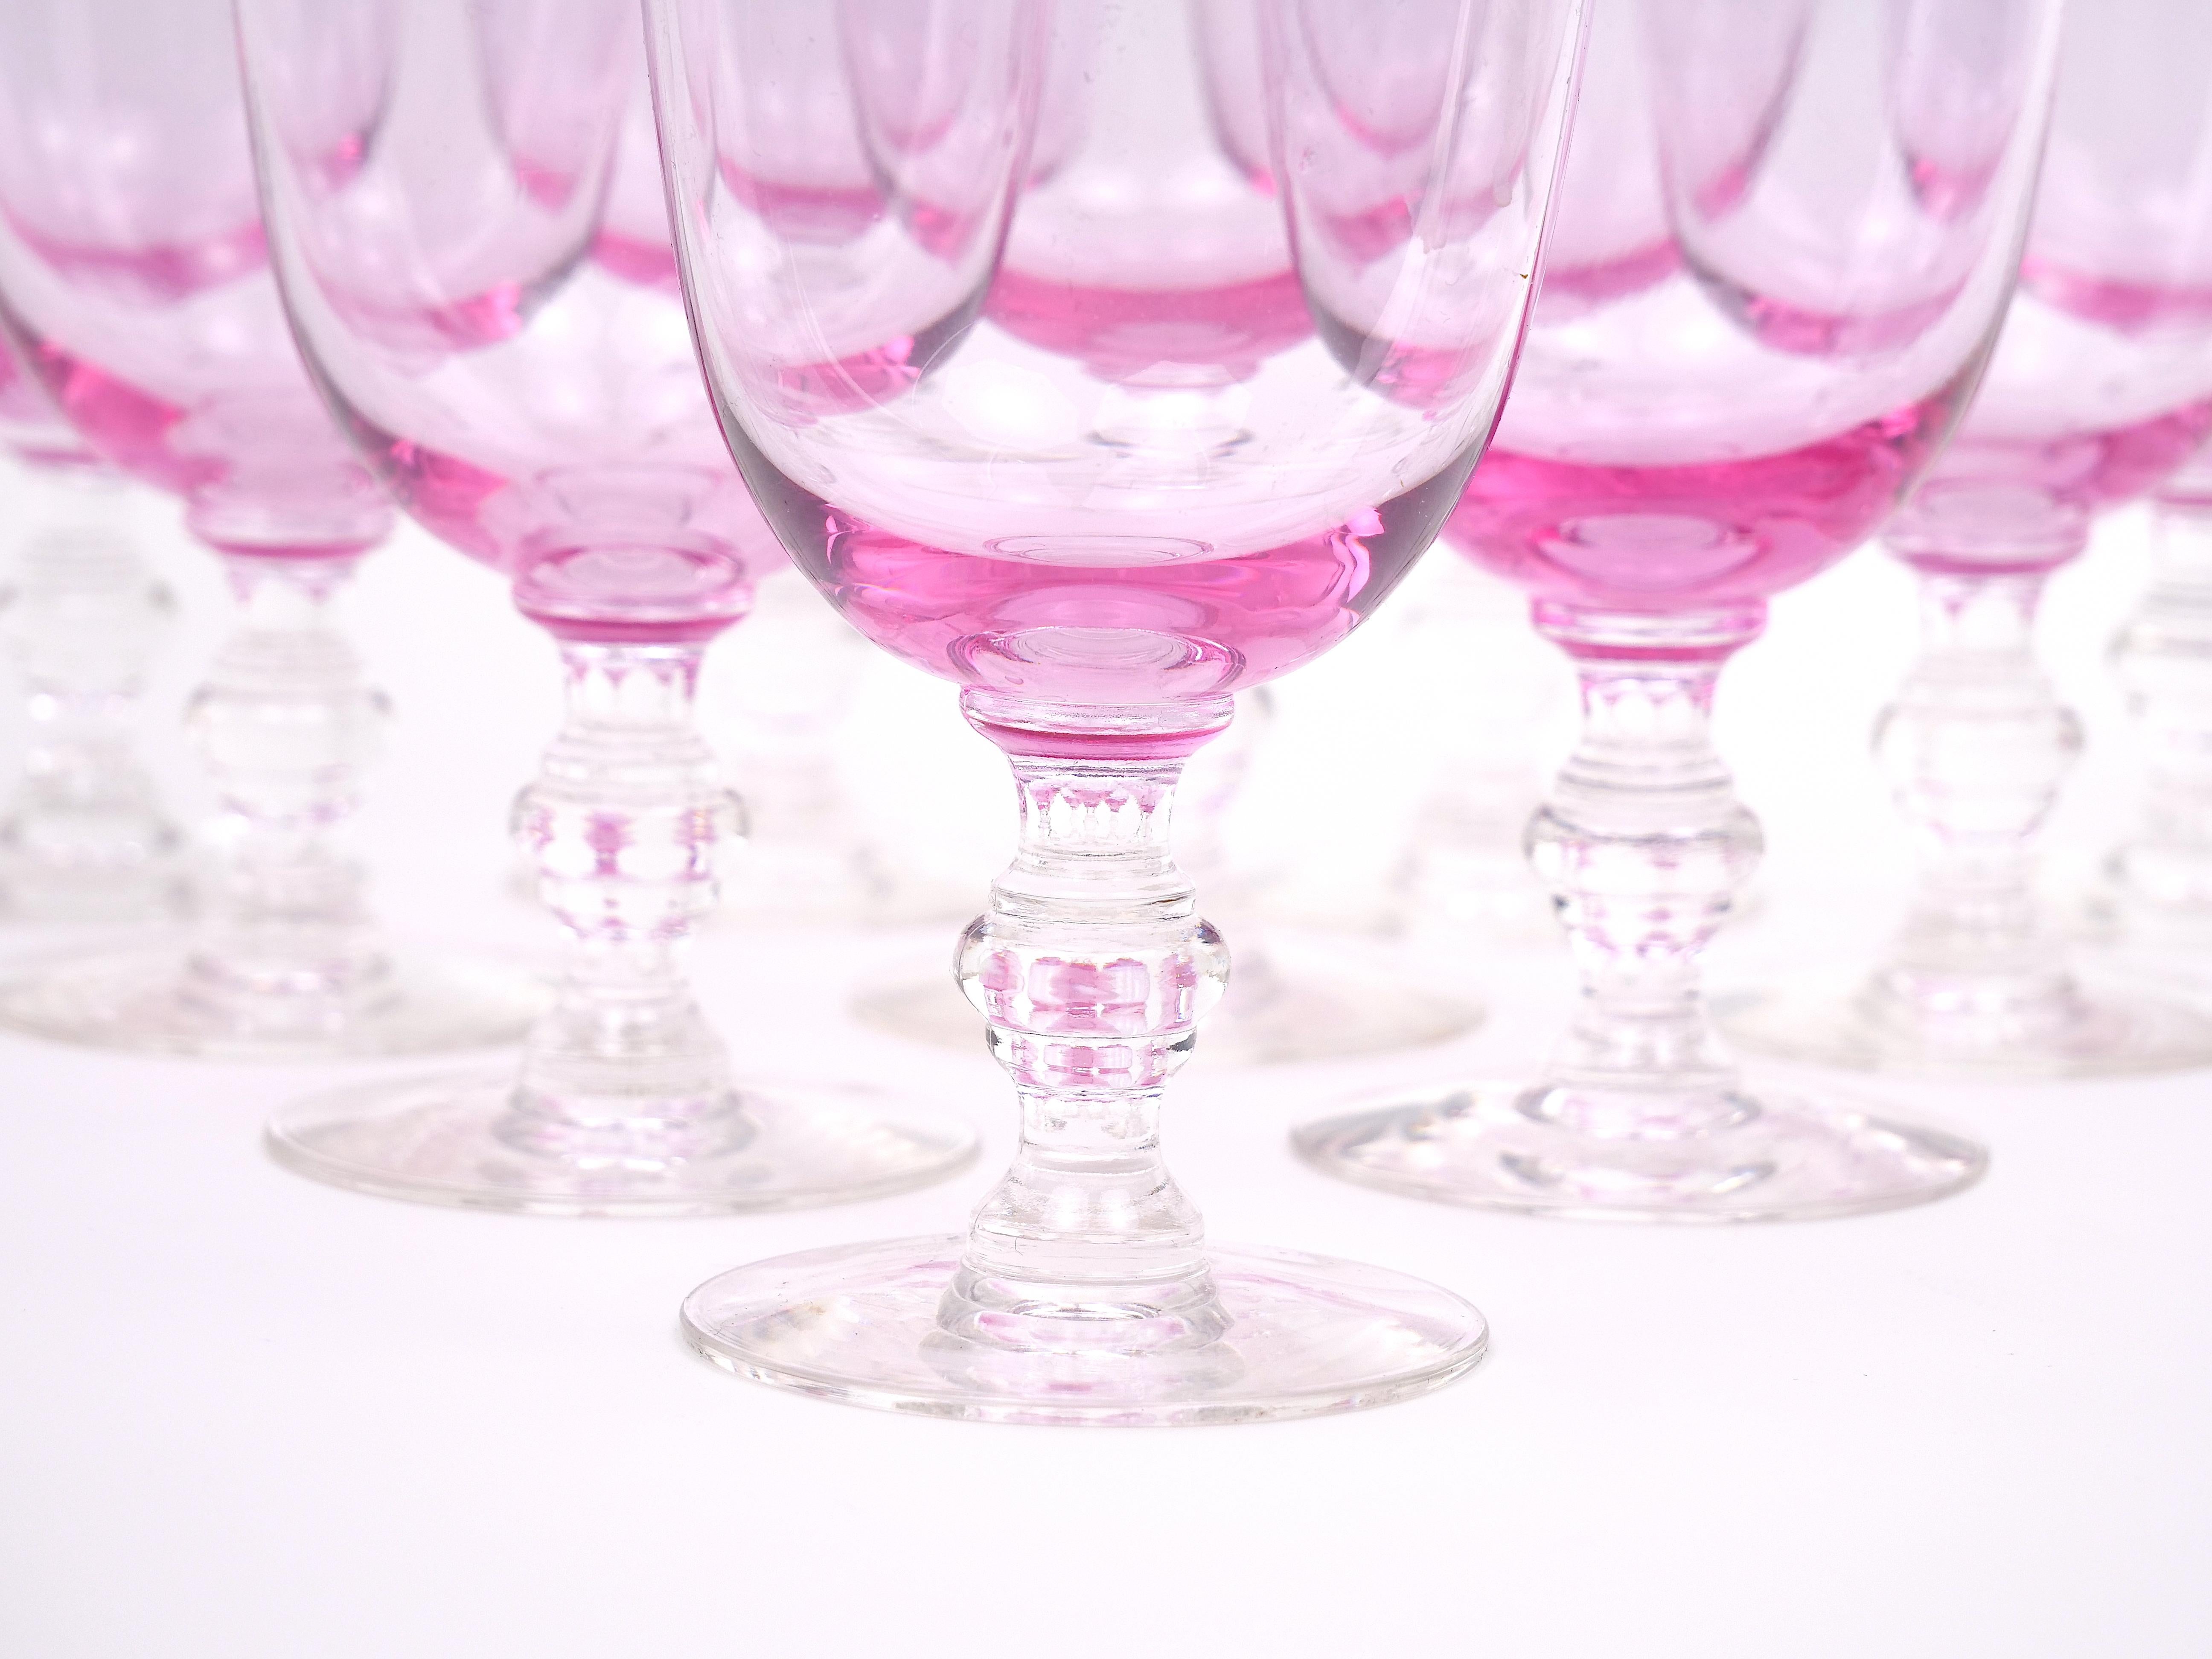 Entrez dans un monde de sophistication rétro avec notre captivant service de gobelets en cristal rose glacé du milieu du siècle pour dix personnes. Imprégnée du charme d'antan, cette Collectional vous transportera à coup sûr dans une époque révolue